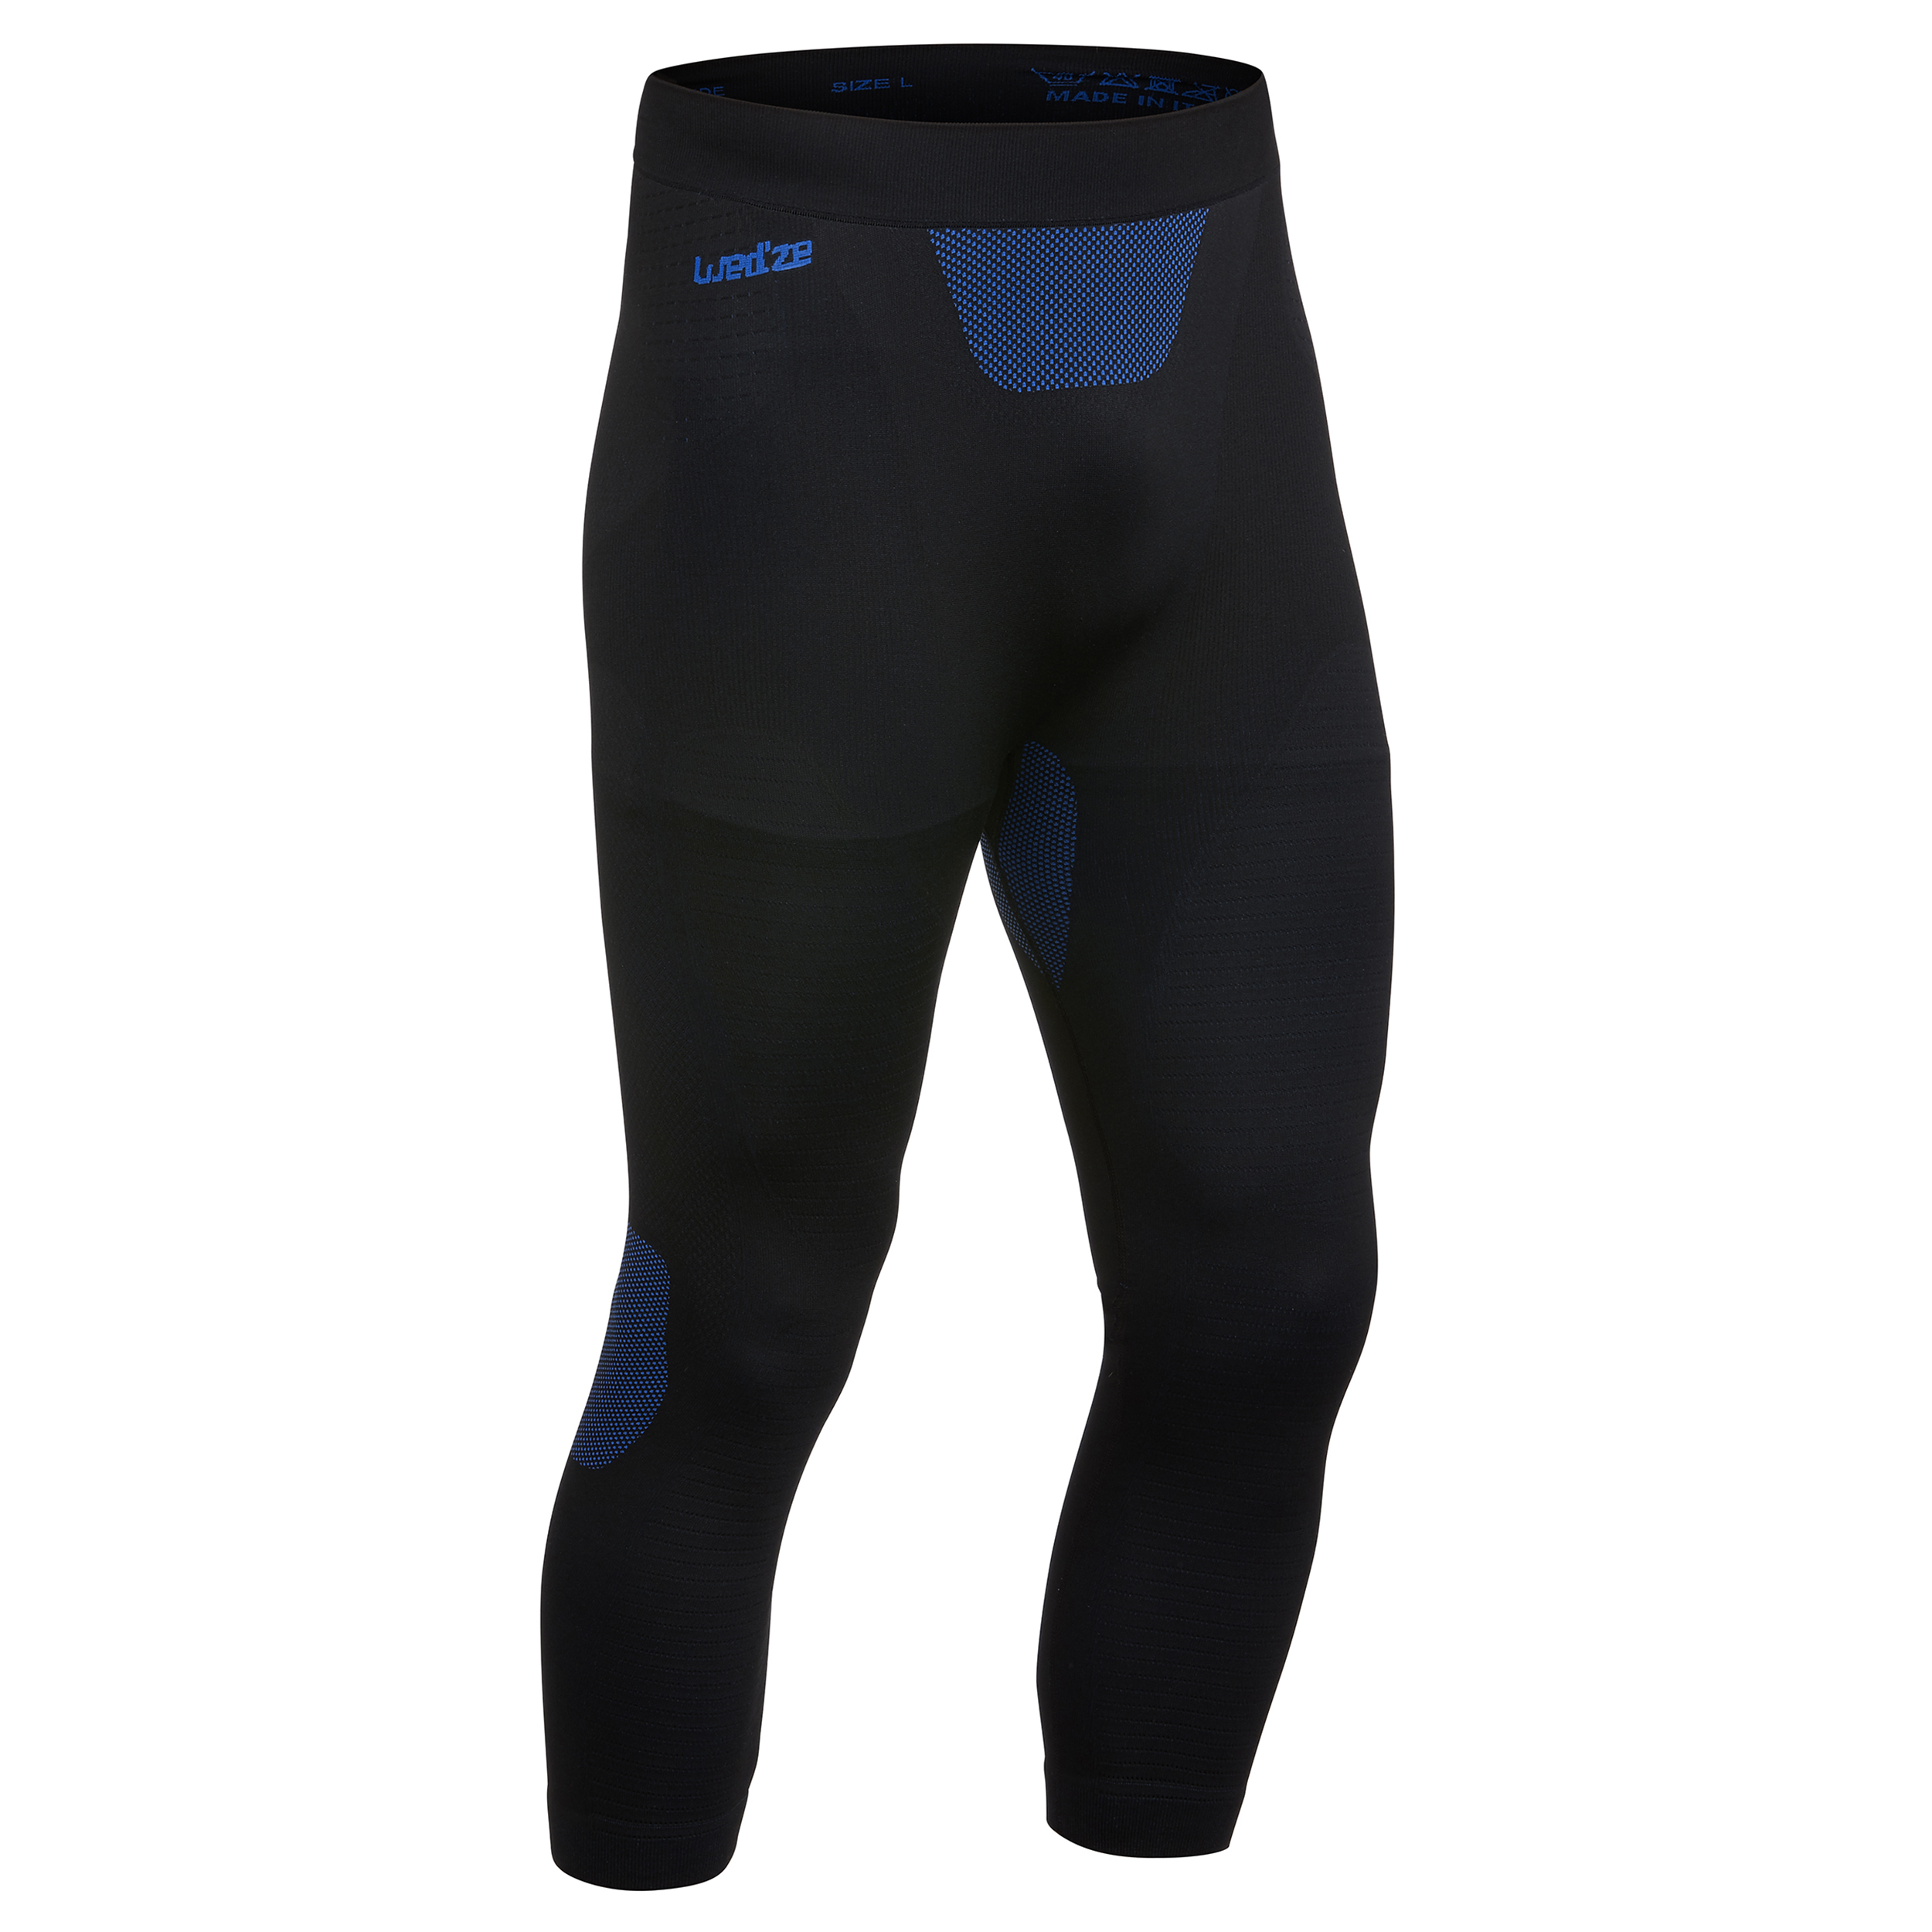 Sous-vêtement thermique de ski seamless homme BL 580 I-Soft bas - noir/bleu  pour les clubs et collectivités